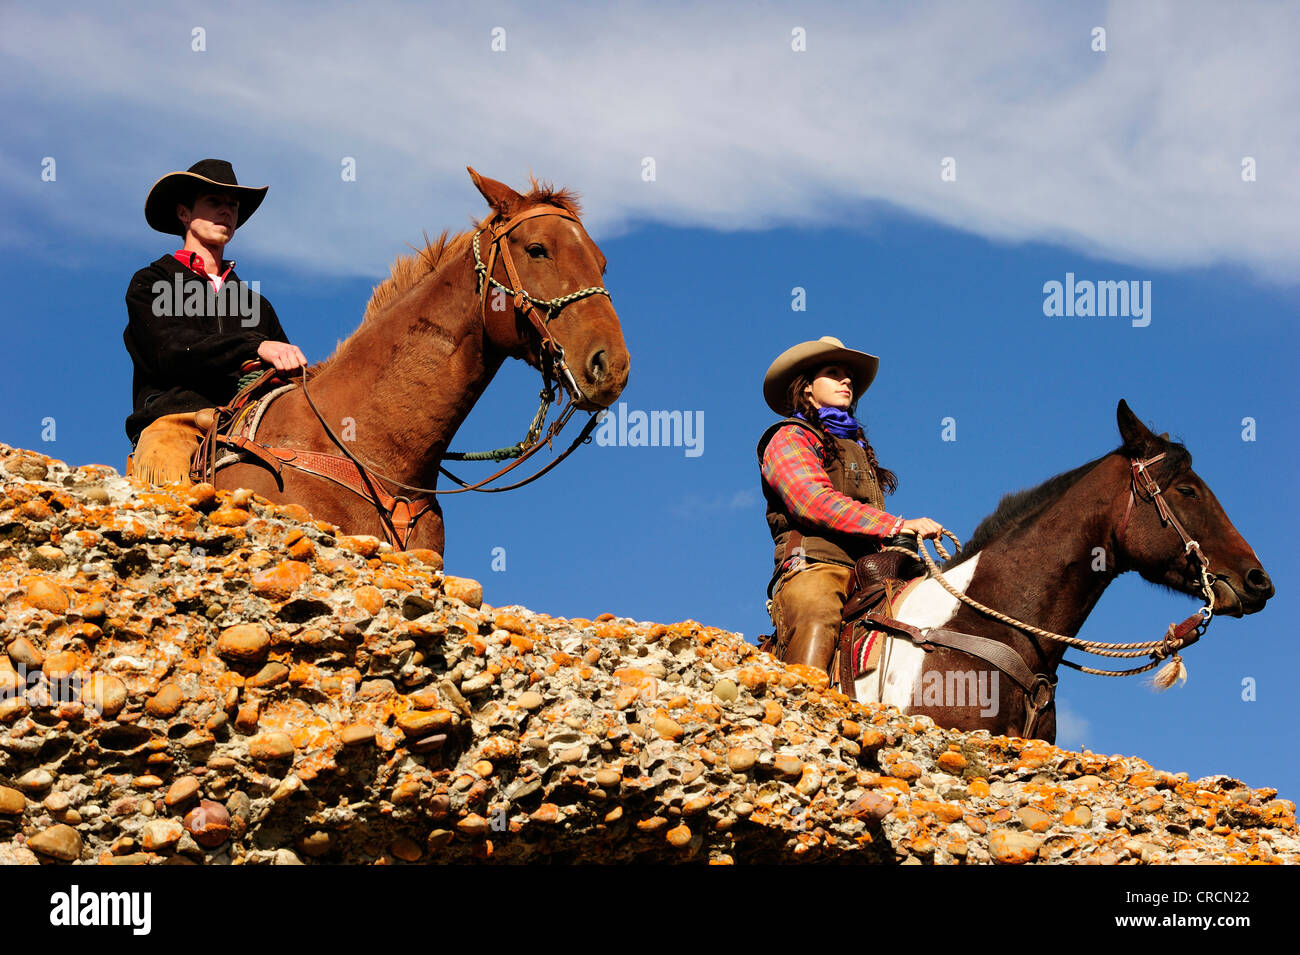 Cowboy et cowgirl sur les chevaux à la recherche dans la distance, de la Saskatchewan, au Canada, en Amérique du Nord Banque D'Images